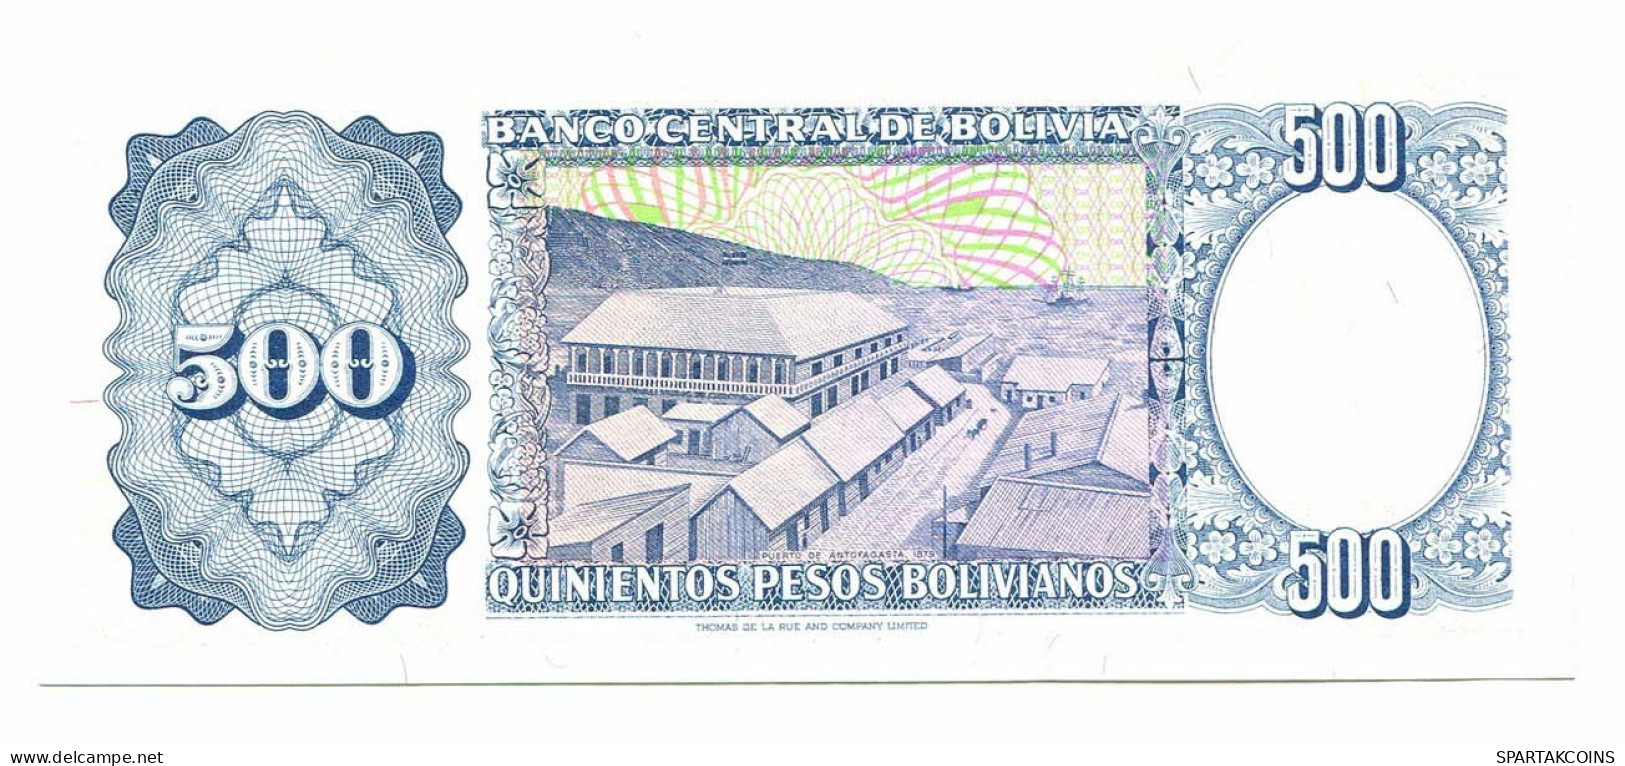 BOLIVIA 500 PESOS BOLIVIANOS 1981 SERIE C AUNC Paper Money Banknote #P10805.4 - [11] Emissioni Locali